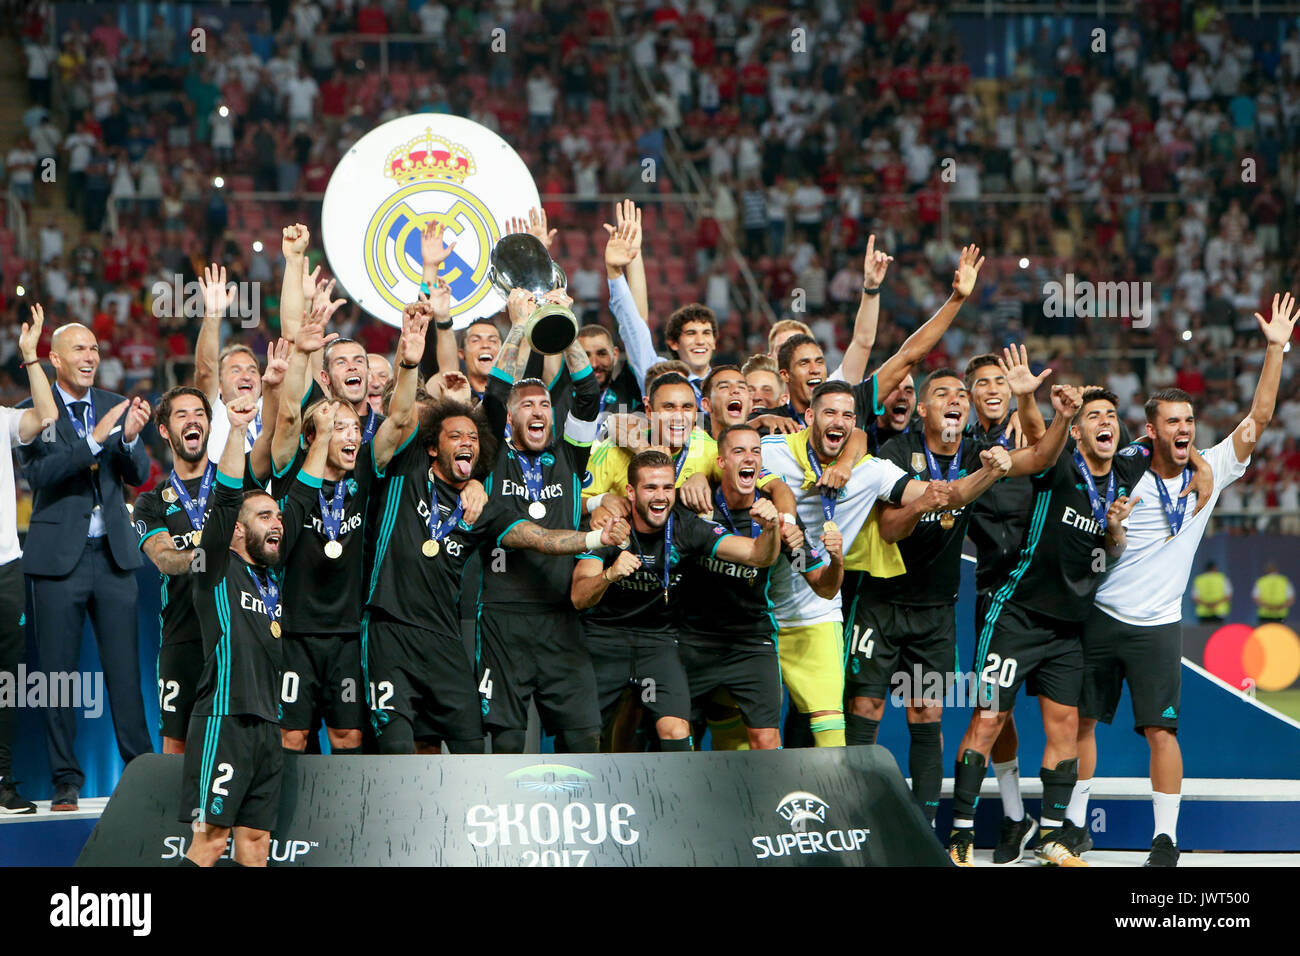 Uefa super cup immagini e fotografie stock ad alta risoluzione - Alamy